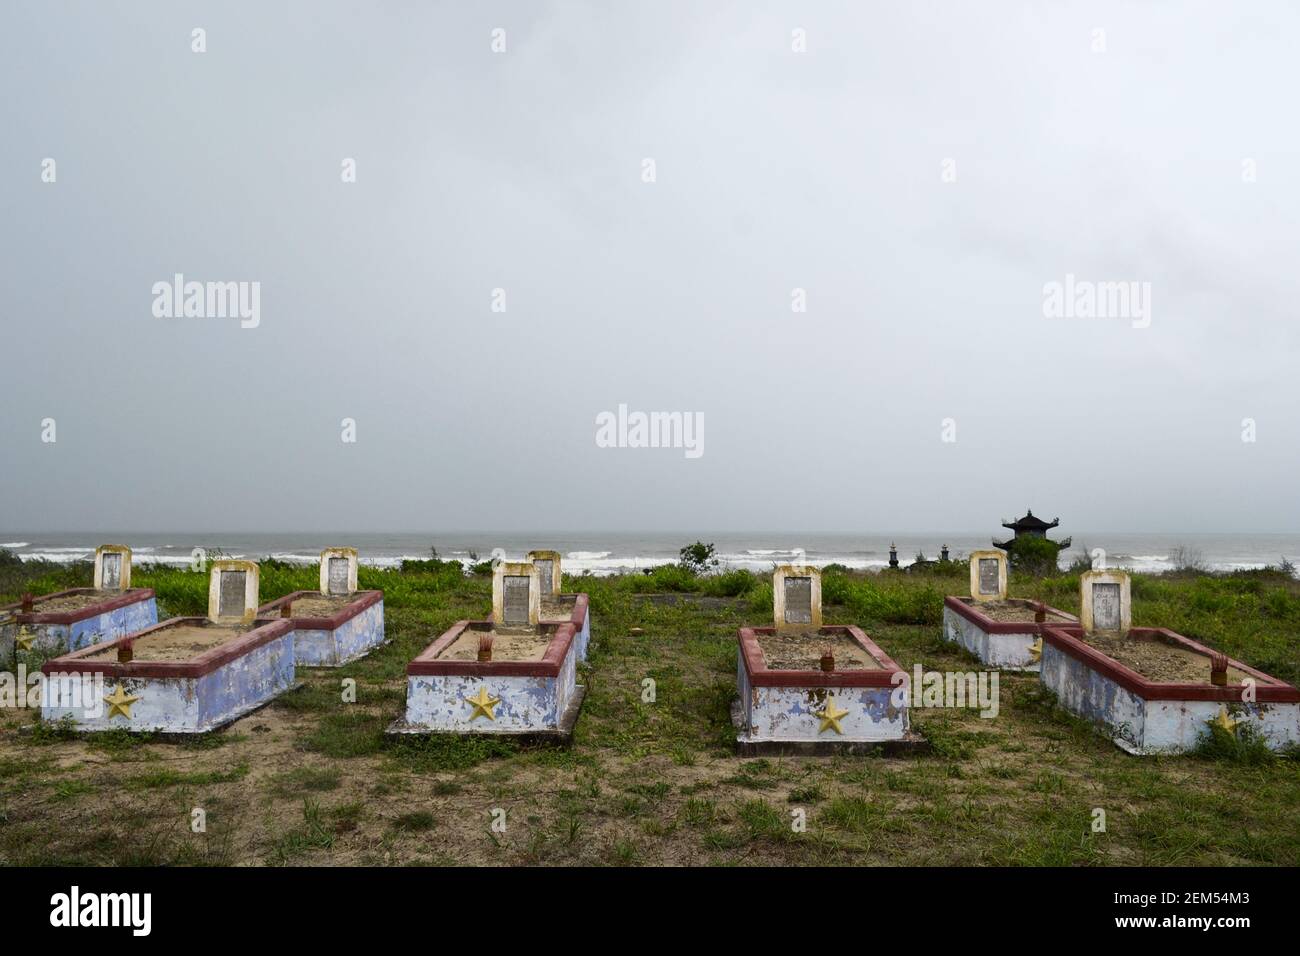 Friedhof des Vietnamkrieges mit alten verwitterten Grabsteinen in der Nähe eines Strandes in lang Co. Alte militärische Beerdigung an der Küste nahe dem Meer, Stockfoto